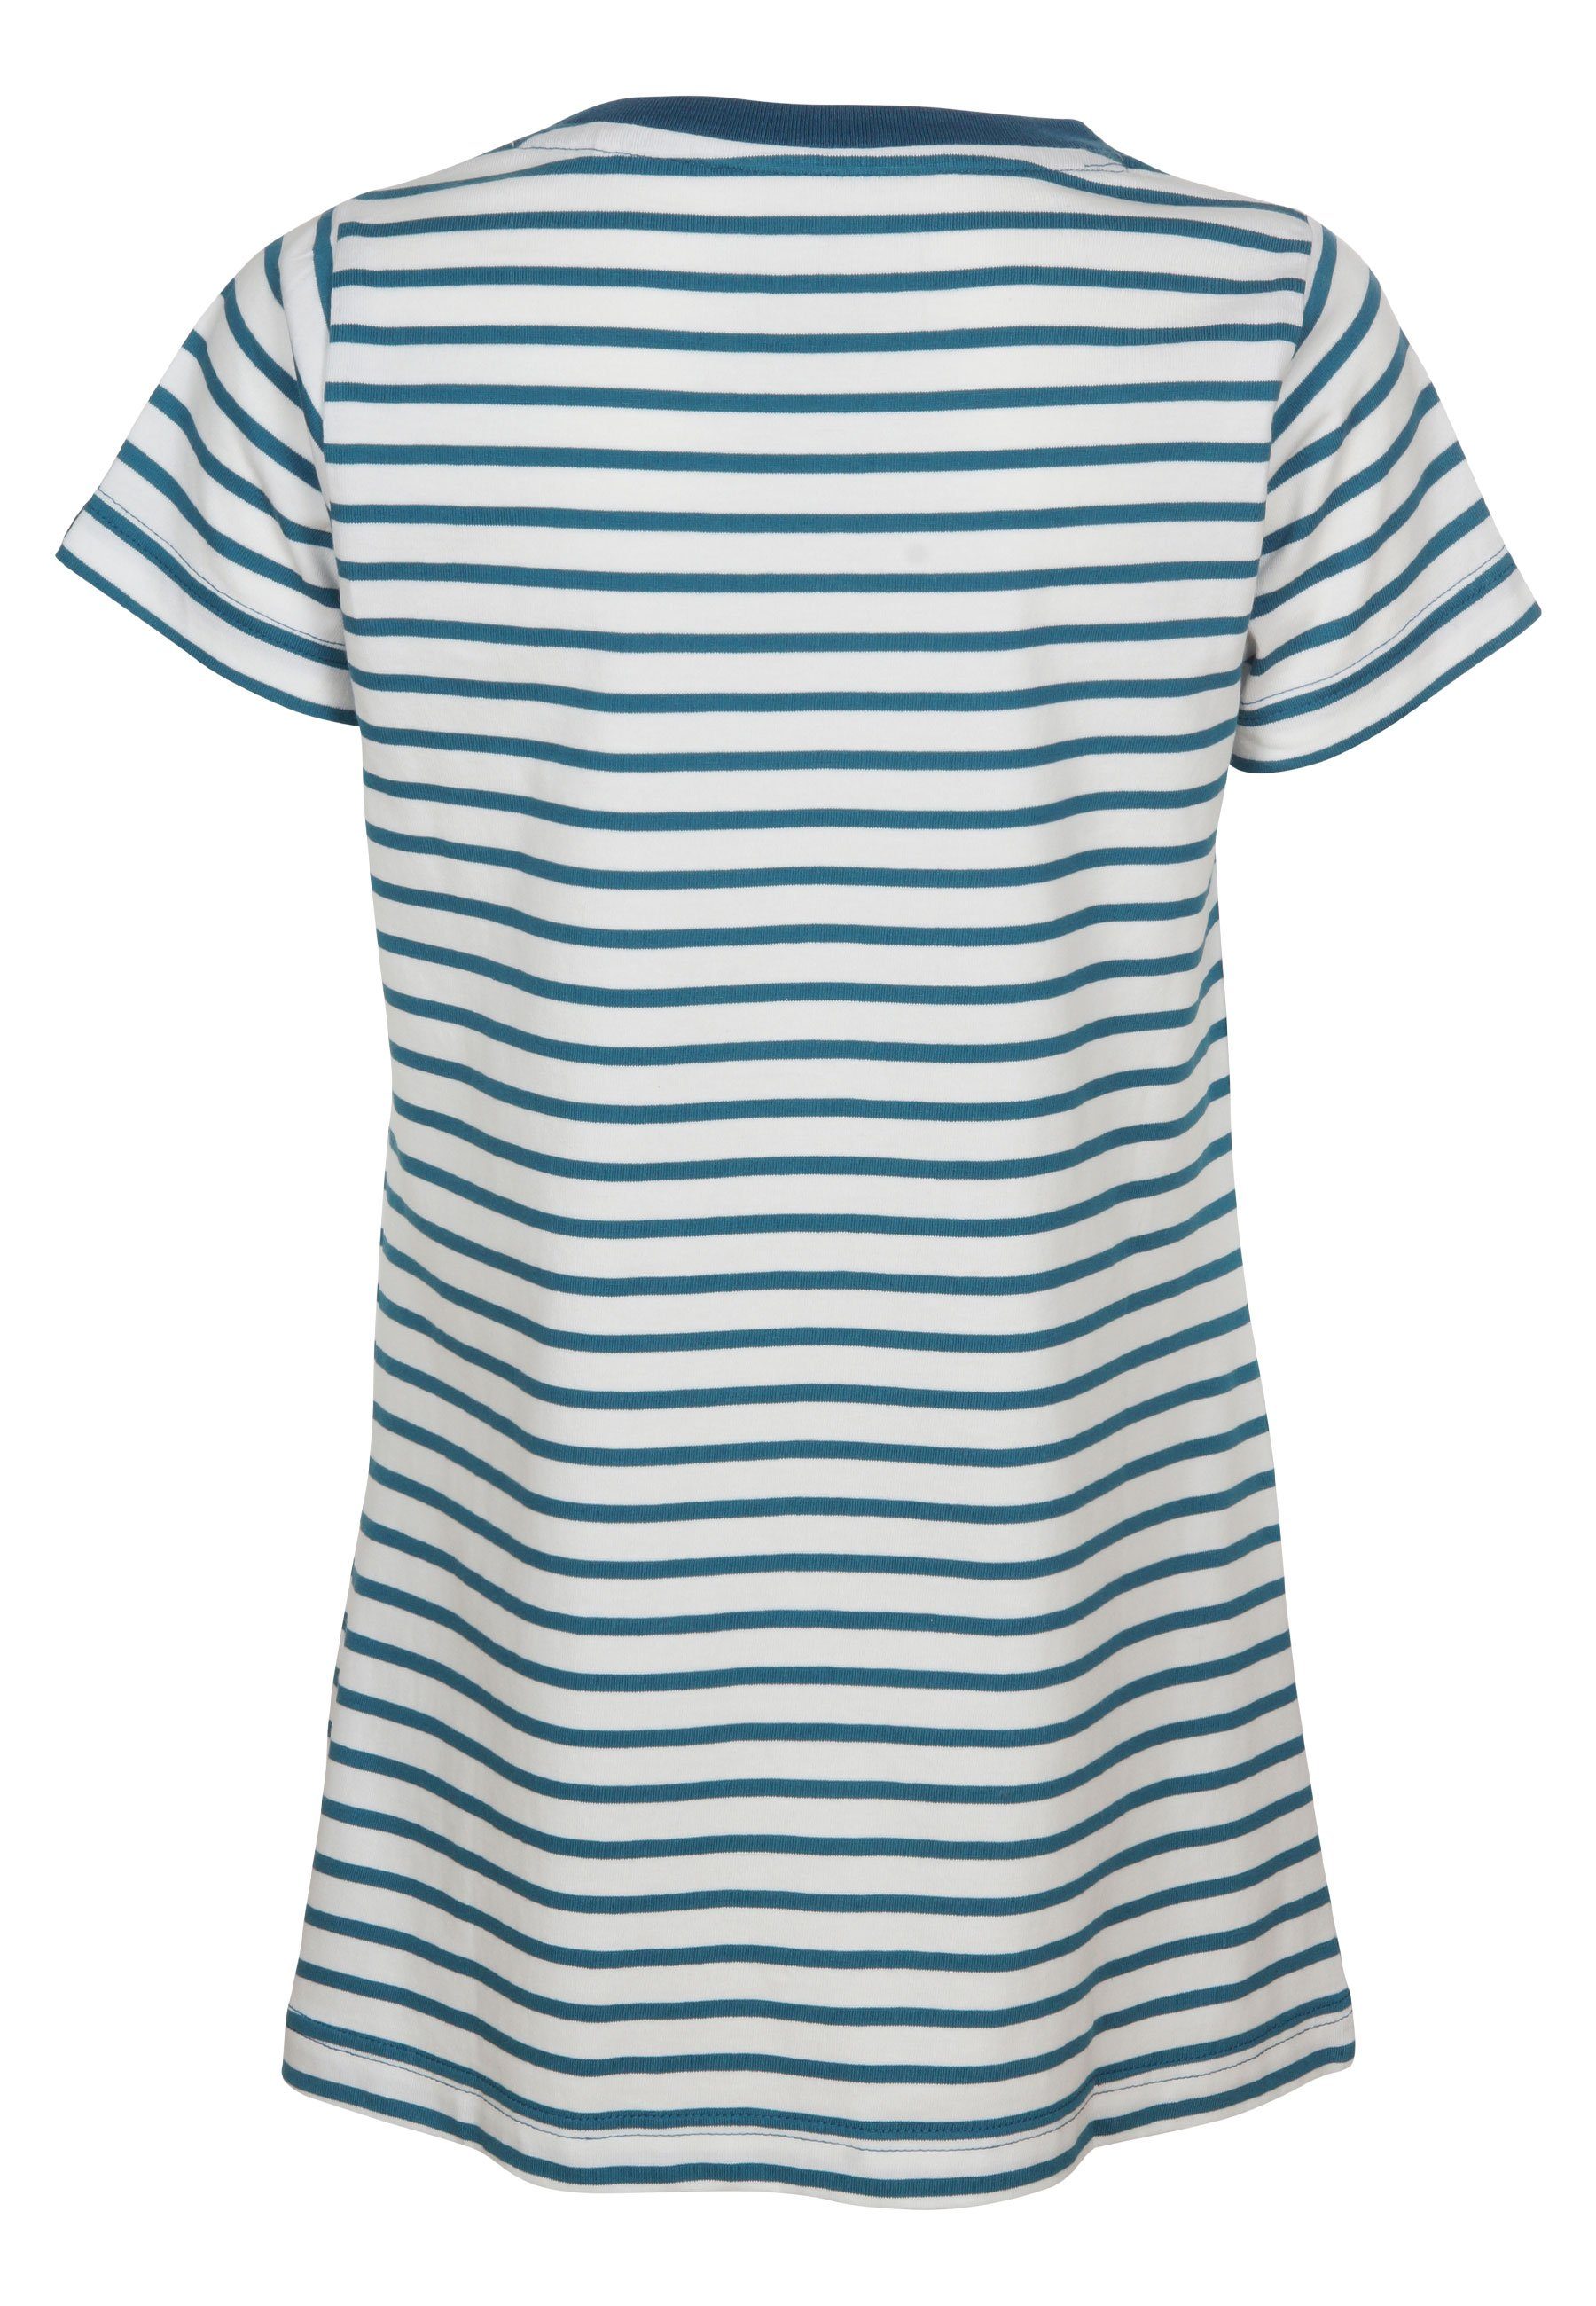 - Hanna Basic Elkline Sommerkleid Shirt-Kleid Streifen white blue coral